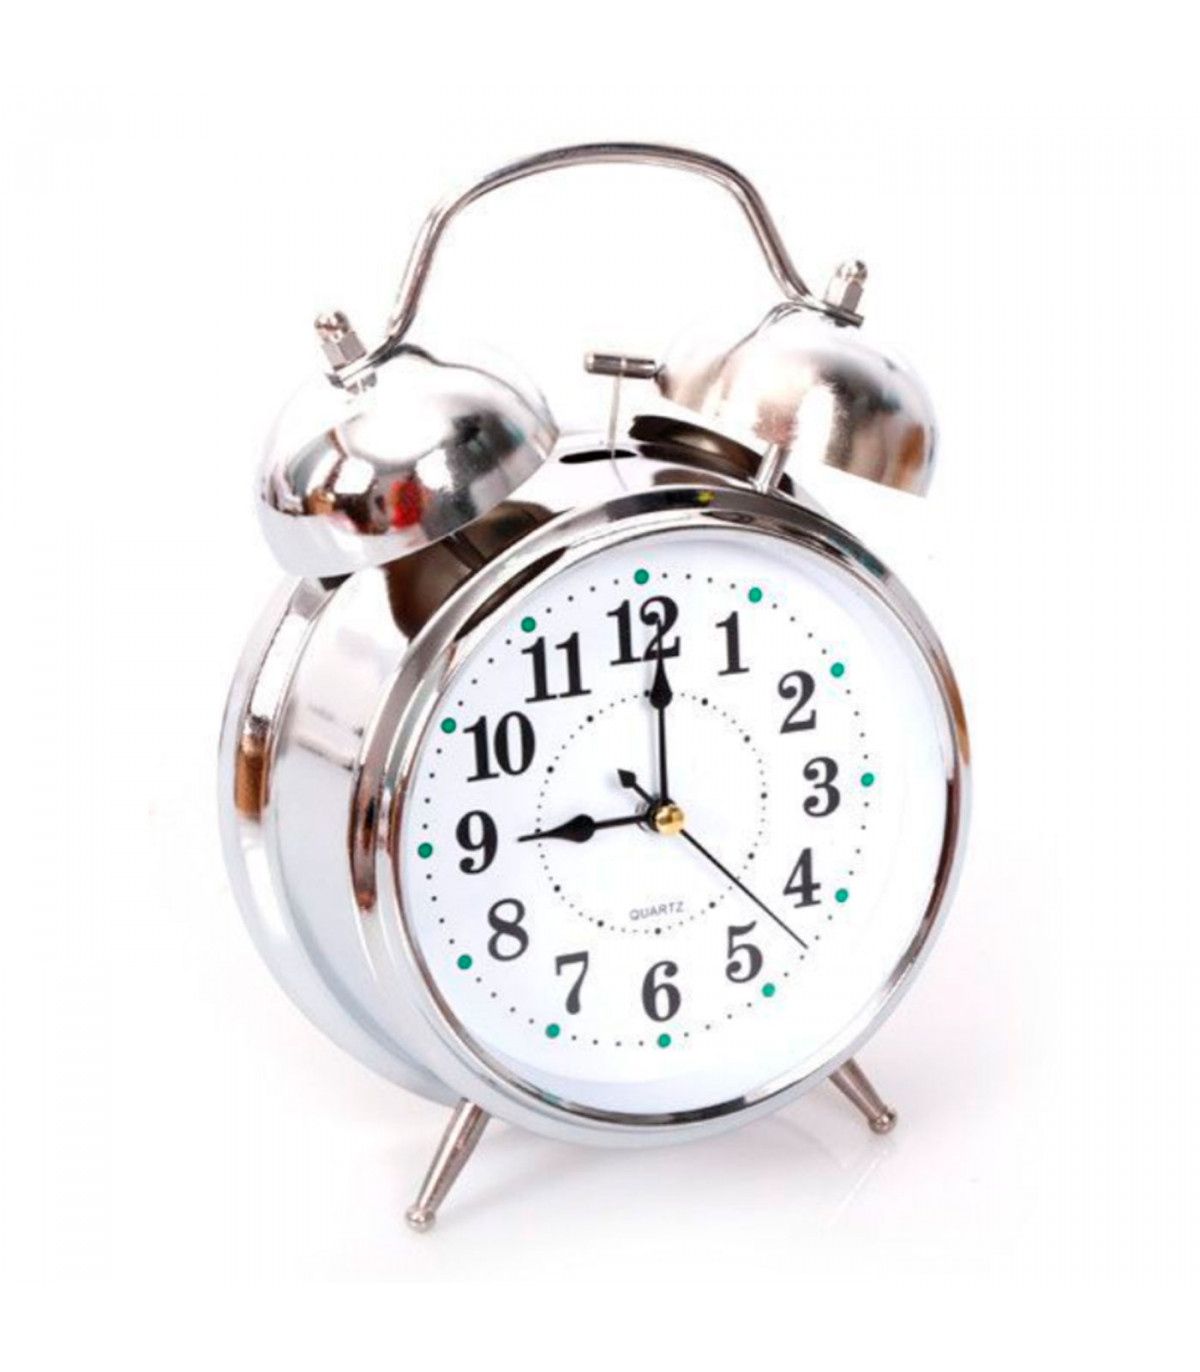 Reloj despertador analógico, clásico, retro, esfera, timbre, color  plateado, metálico, con luz, a pilas, dimensiones 7 x 22 x 4.